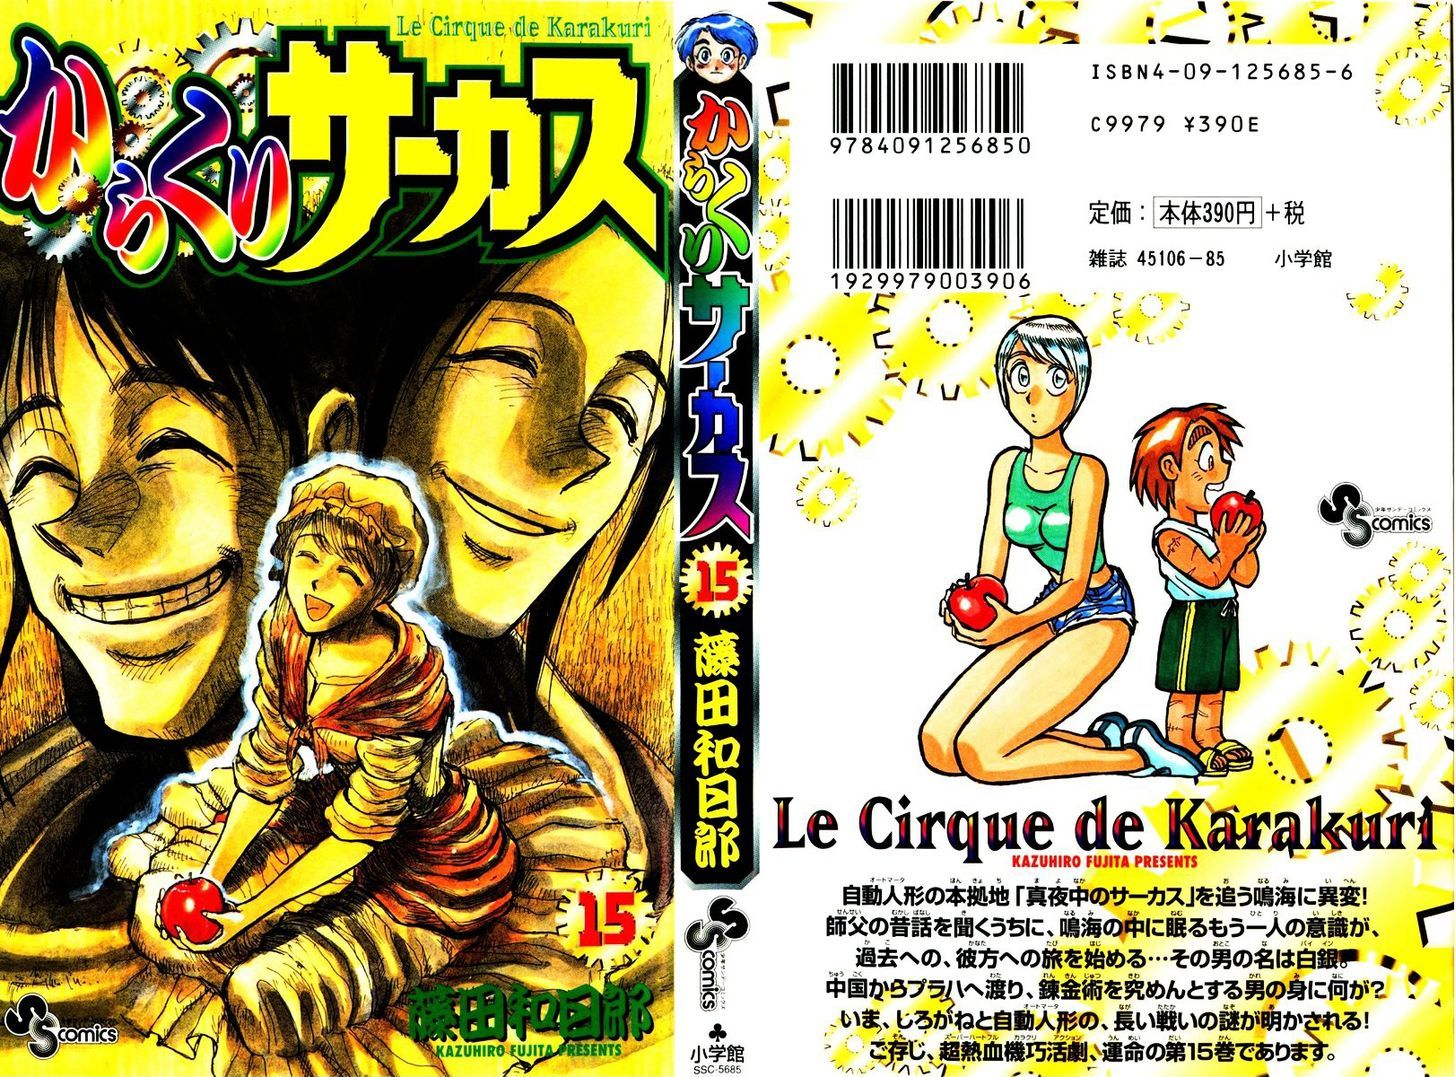 Karakuri Circus Chapter 137 : Karakuri〜Bai-Jin And Bai-Yin—Act 3: Arrival - Picture 1